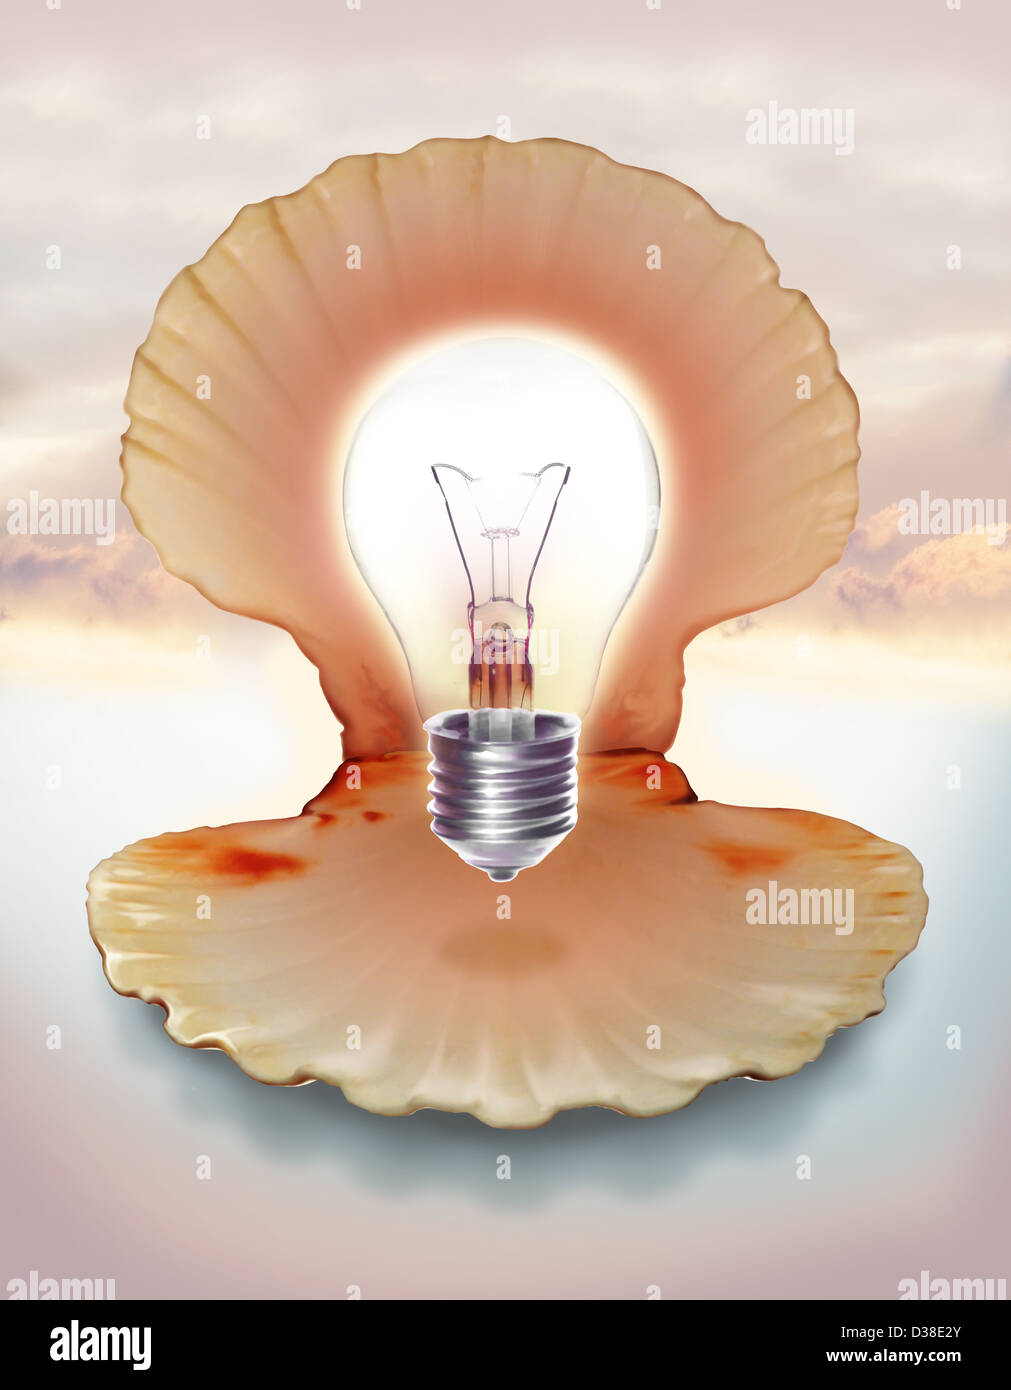 Immagine illustrativa della lampadina in guscio che rappresenta le idee Foto Stock